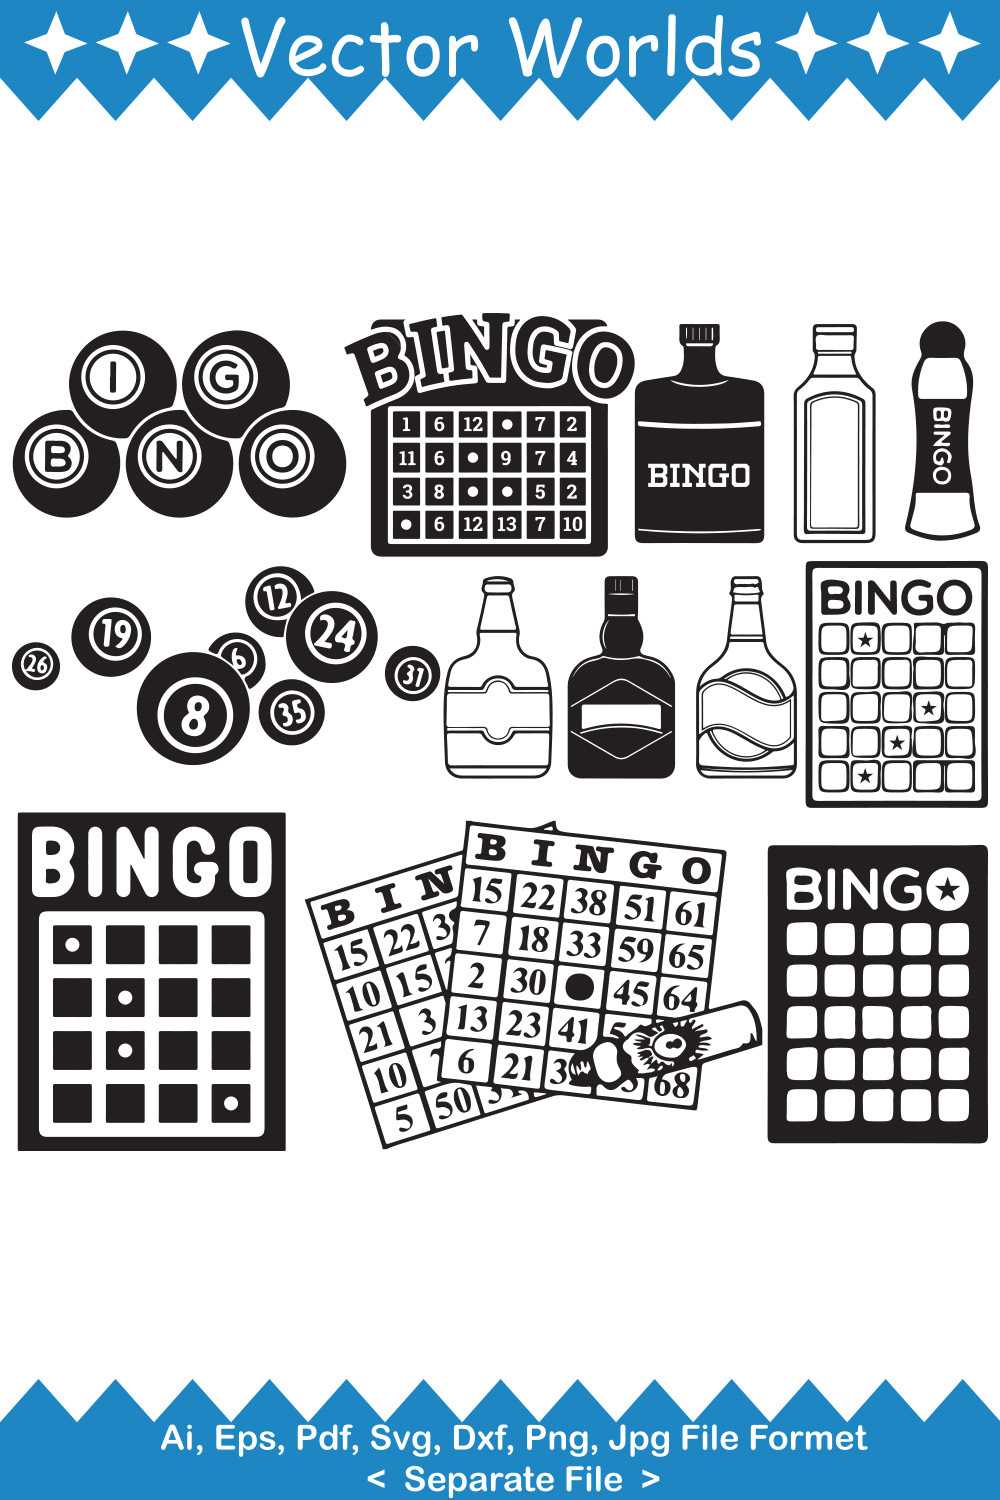 Bingo SVG Vector Design - MasterBundles